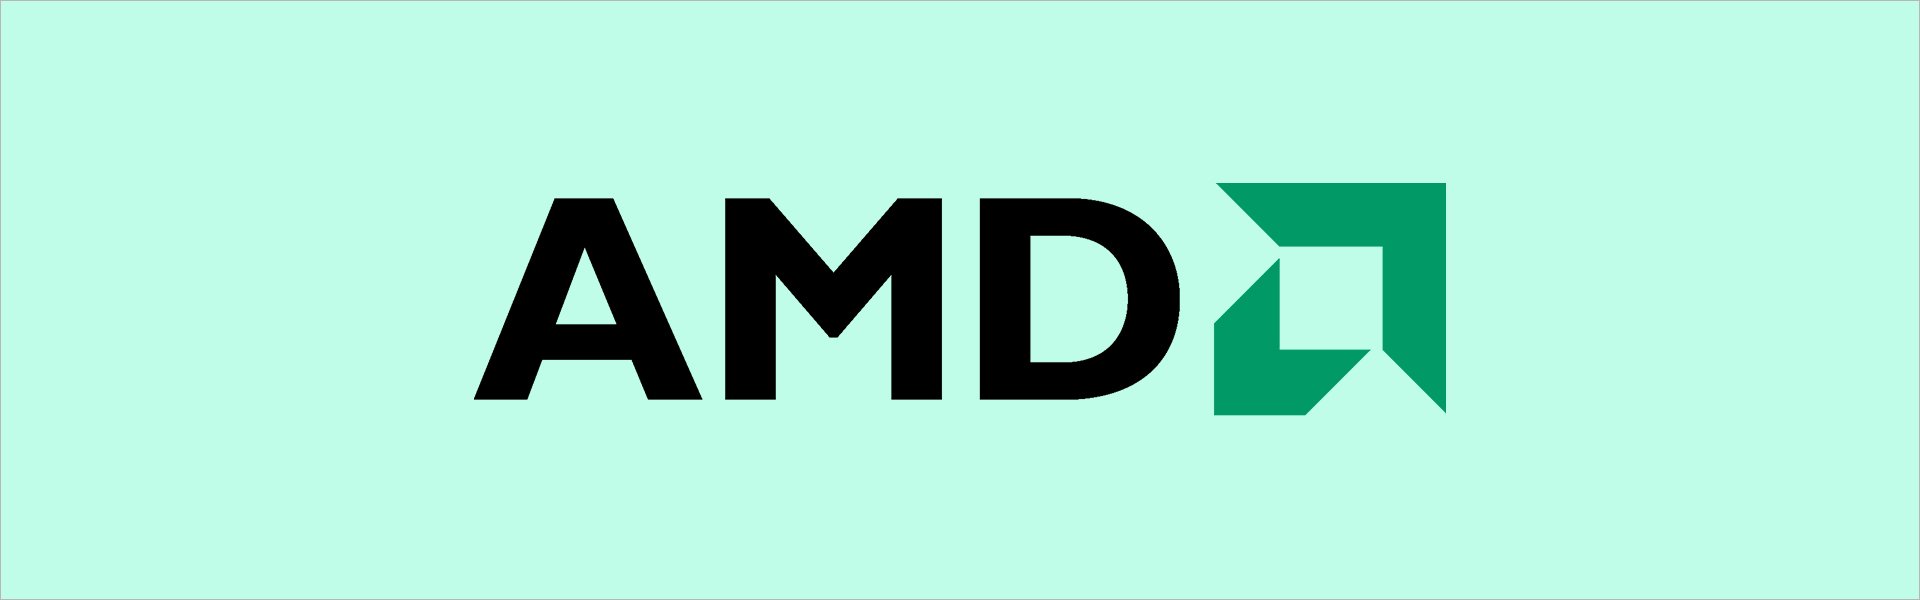 AMD Ryzen 5 3600 AMD